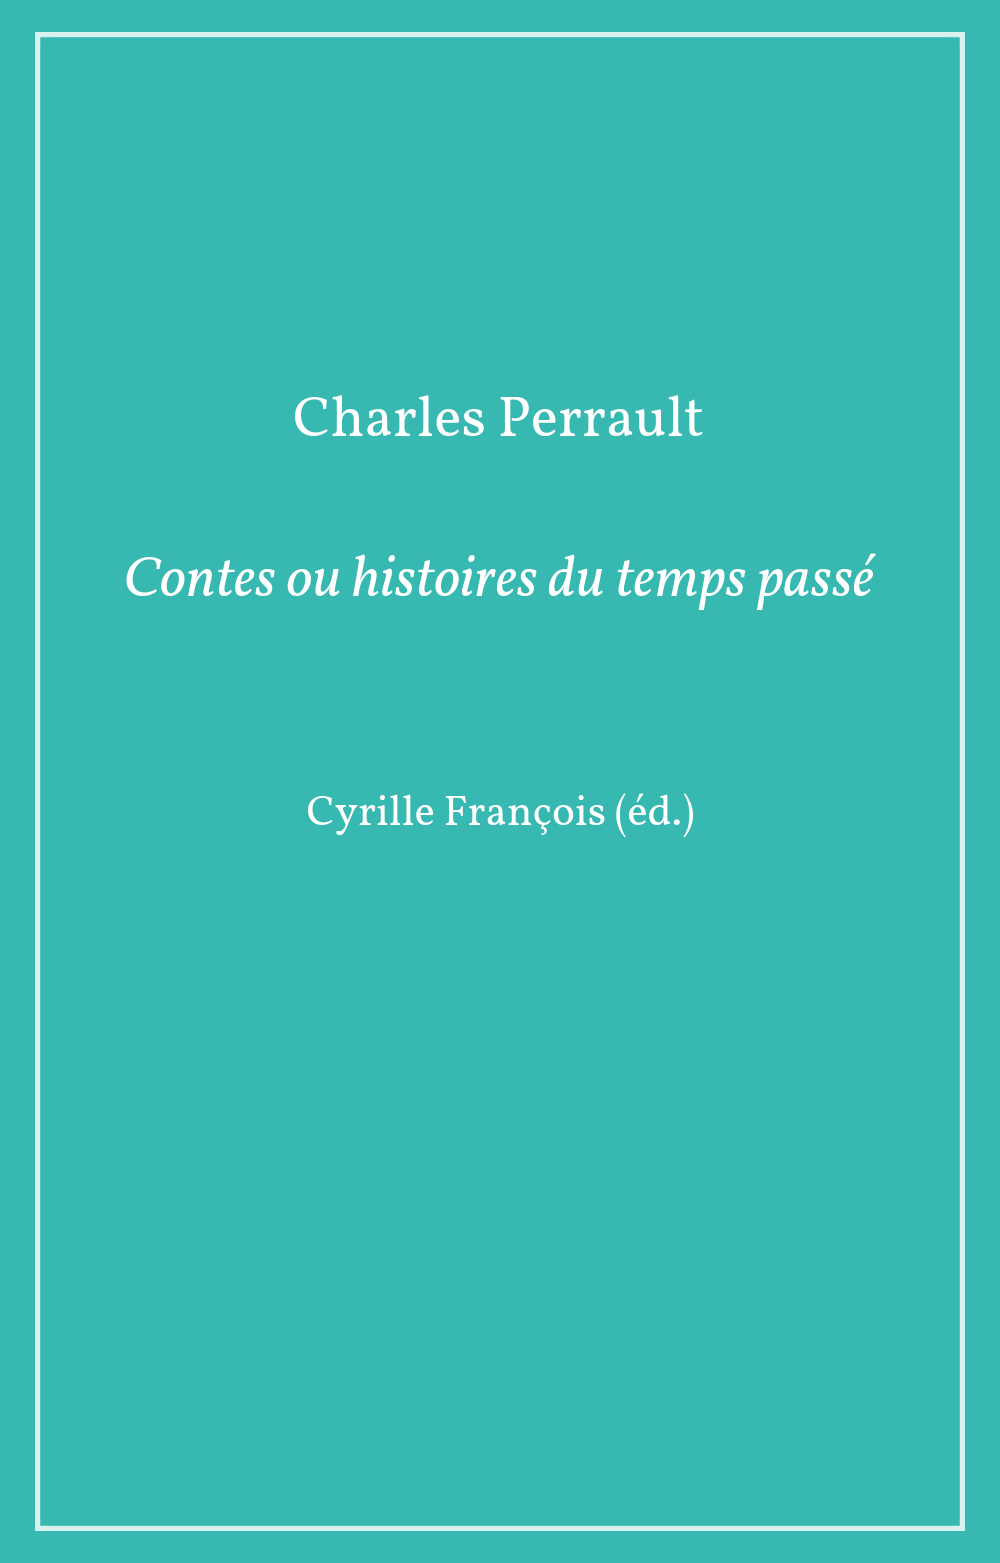 Charles Perrault, Contes ou histoires du temps passé